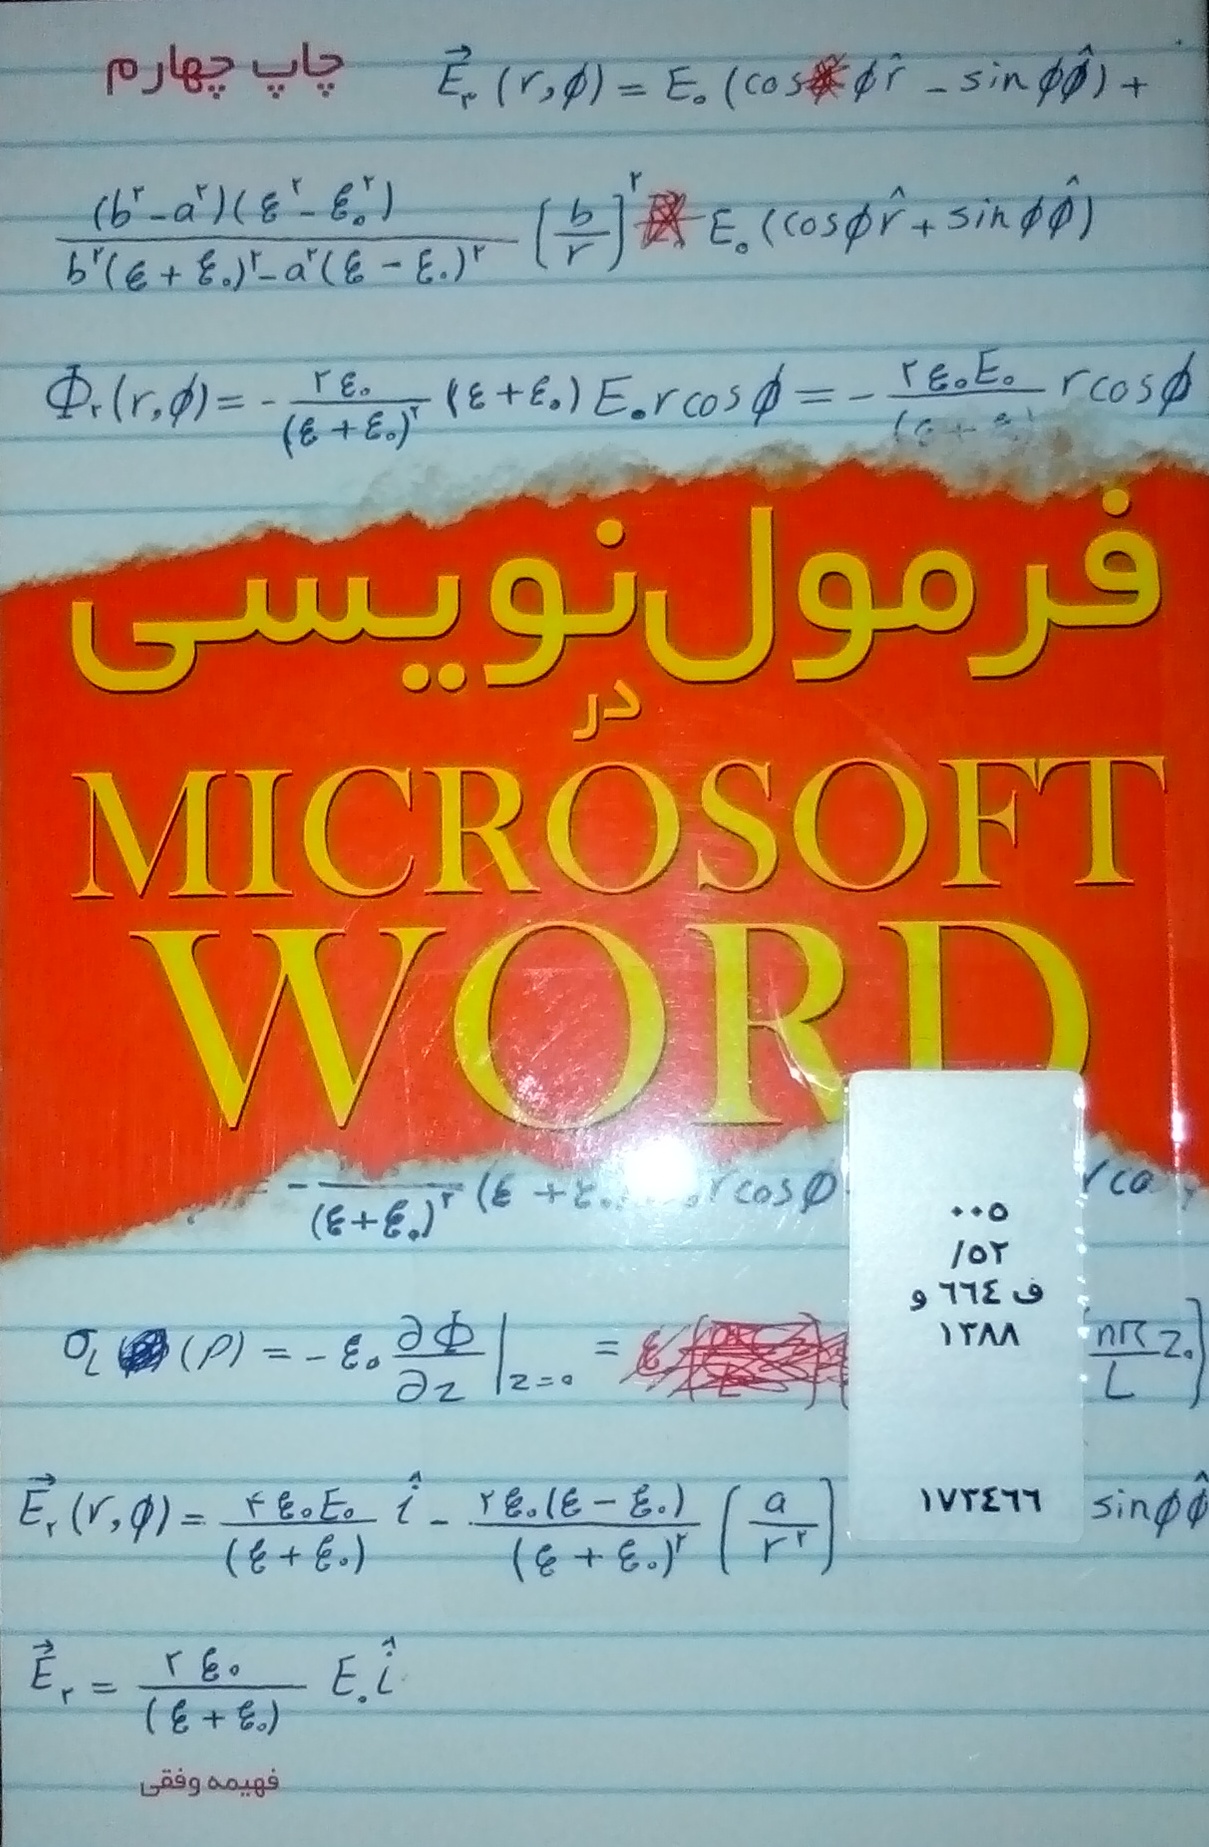 کتاب فرمول نویسی در Microsoft Word